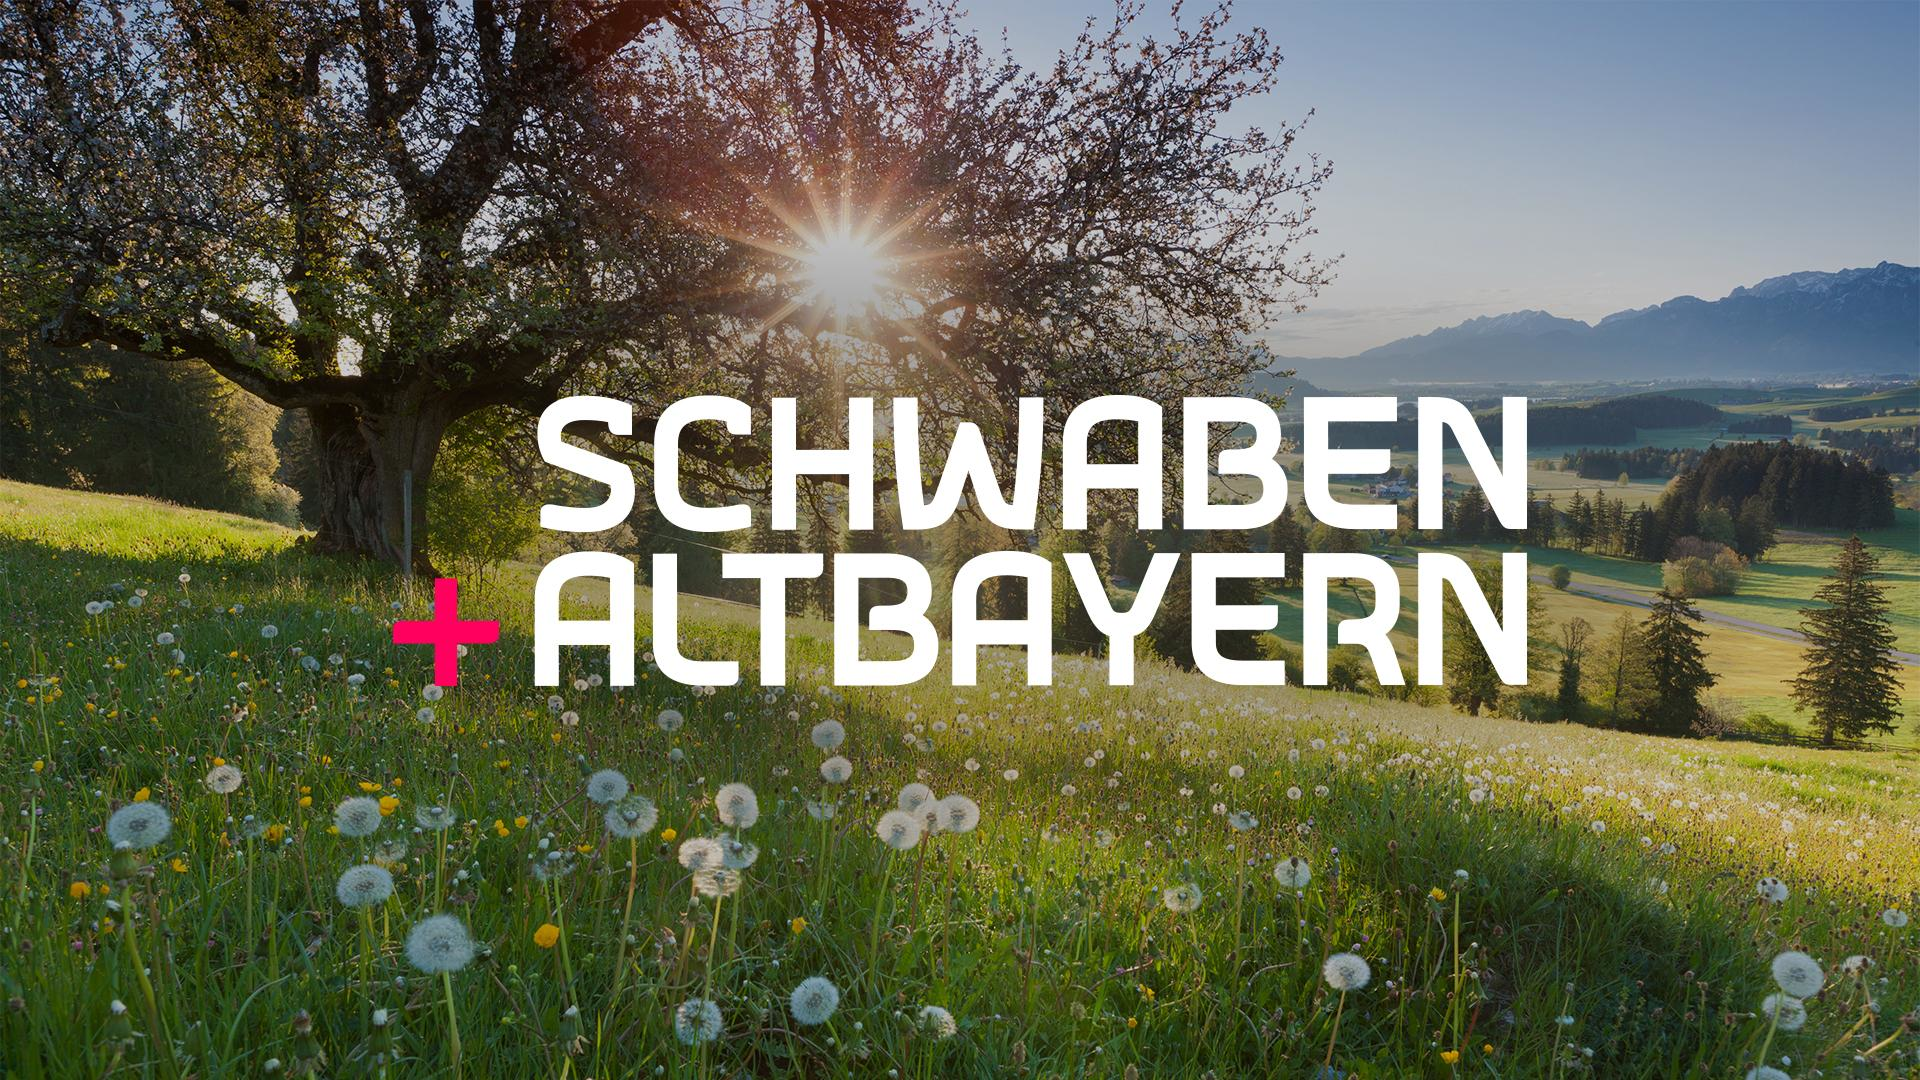 Schwaben + Altbayern